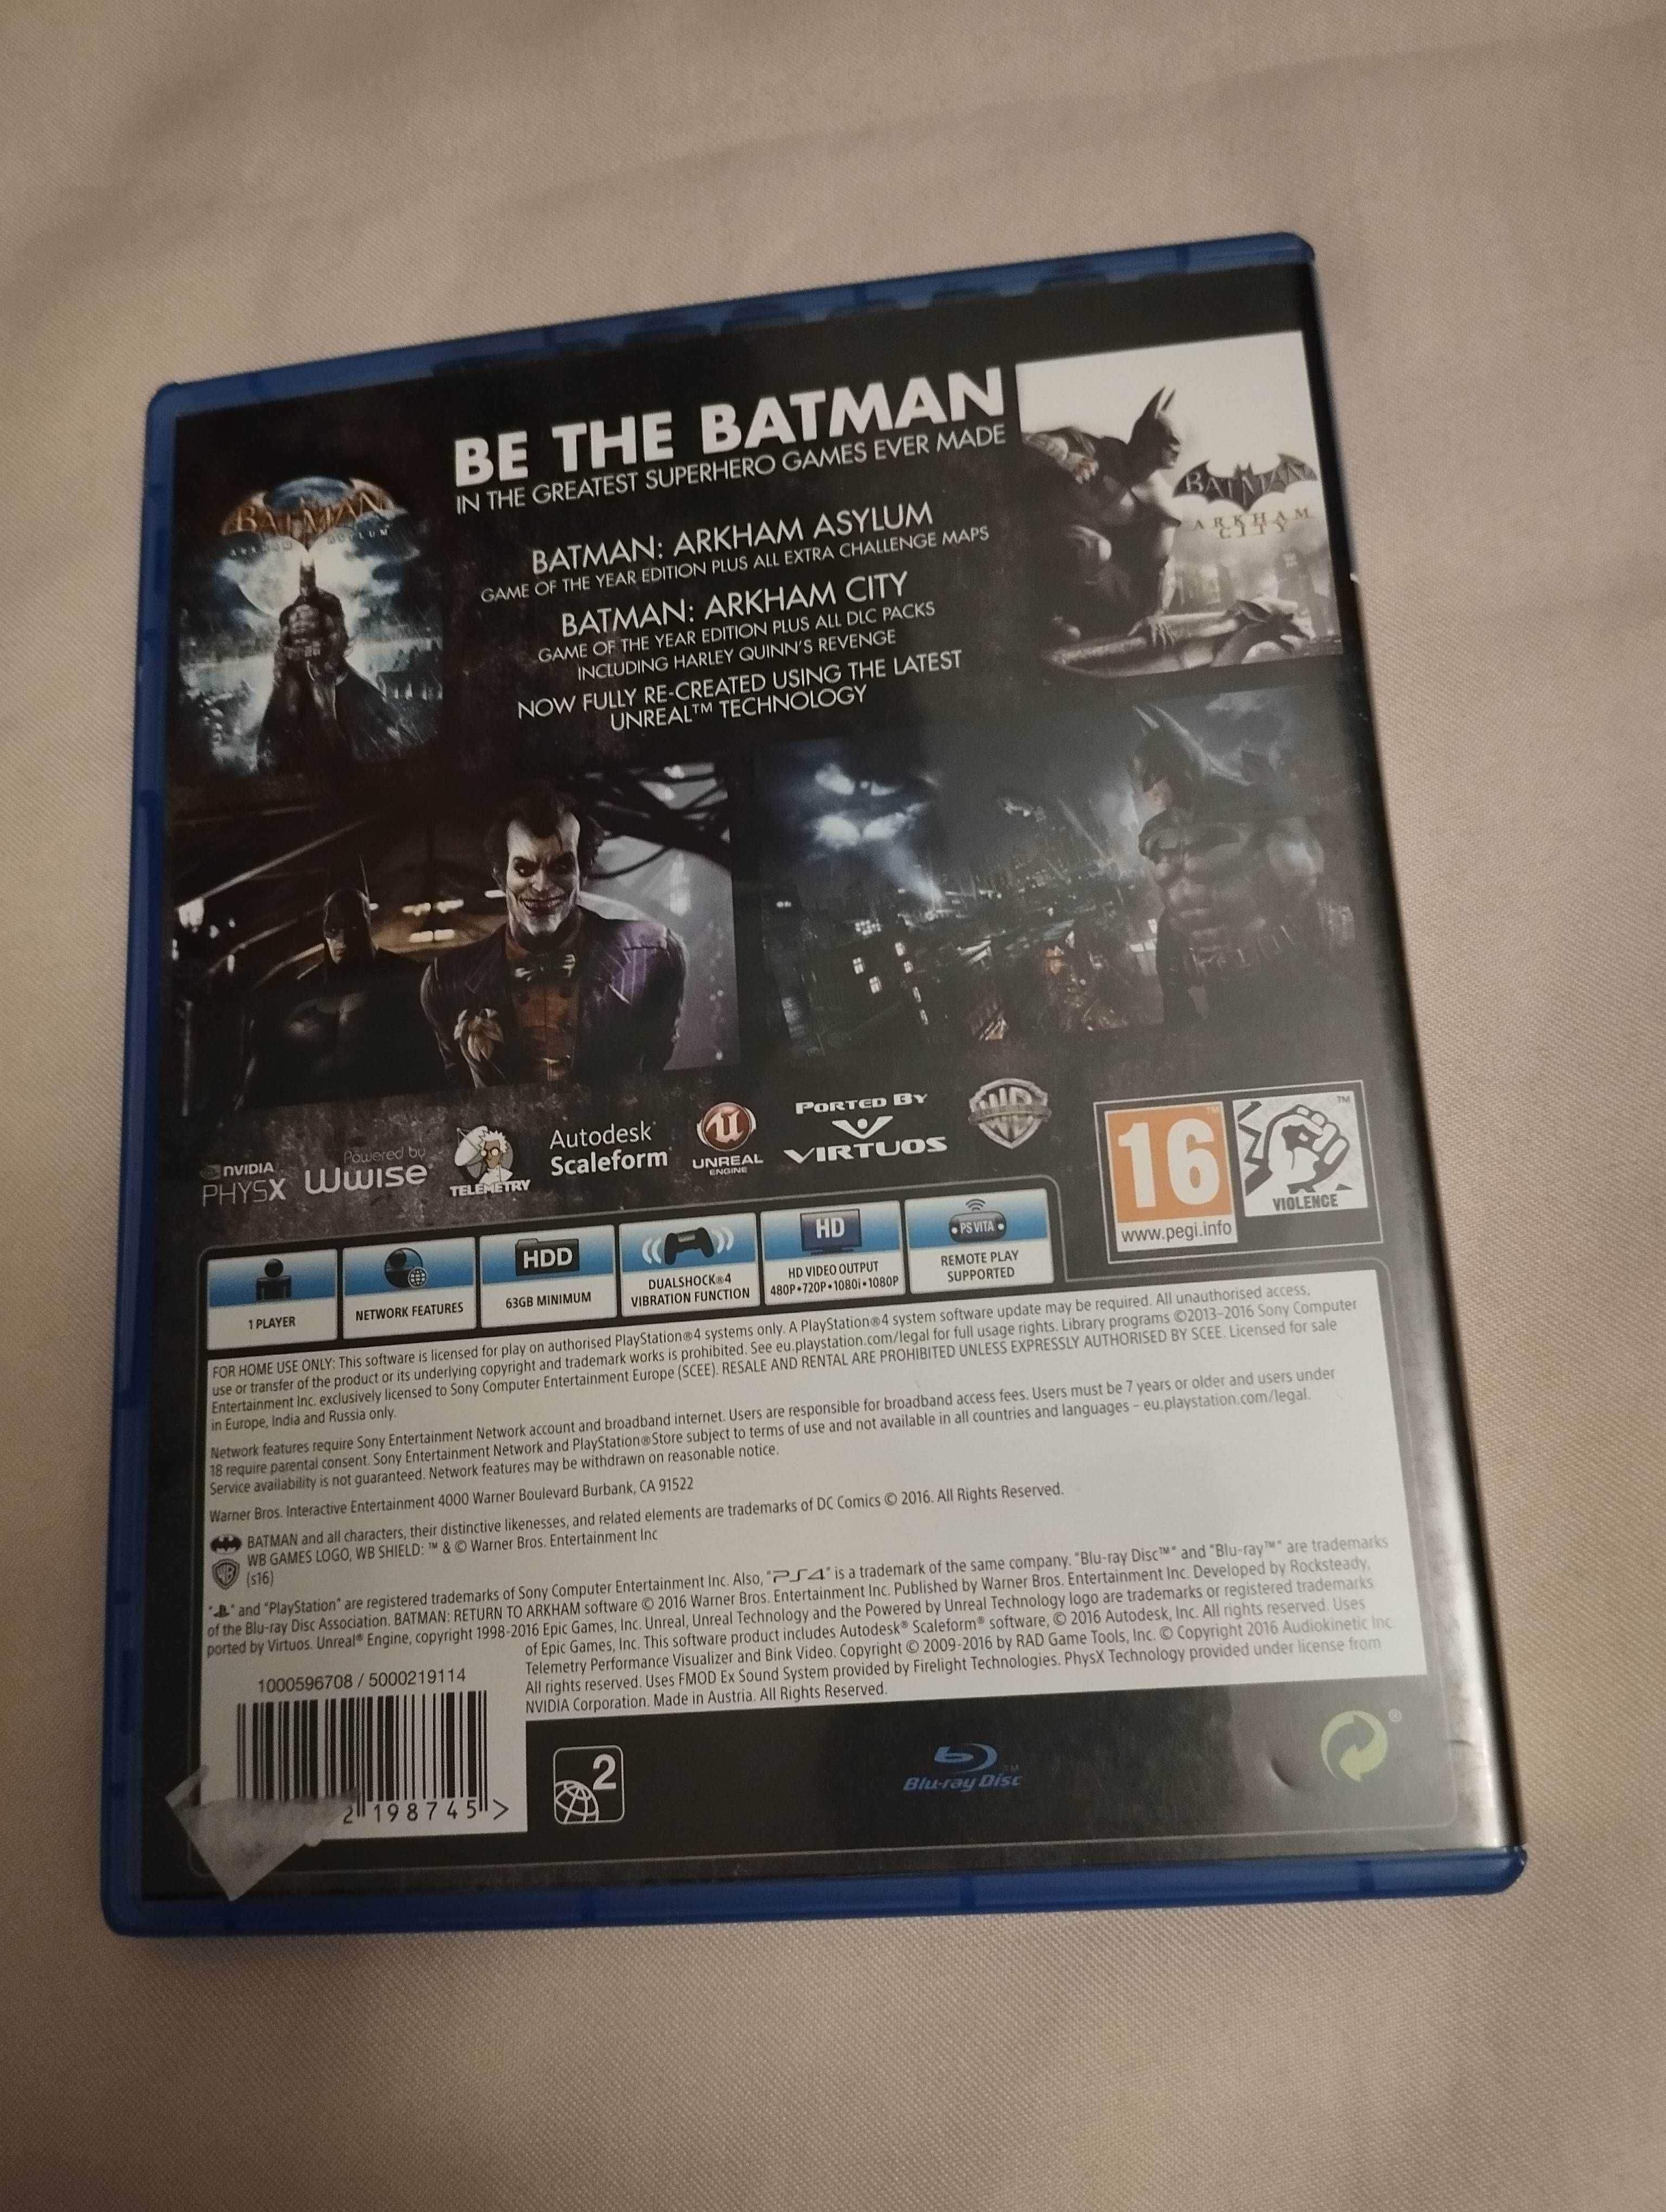 Batman Return to Arkham - PS4 - j.polski, duży wybór gier